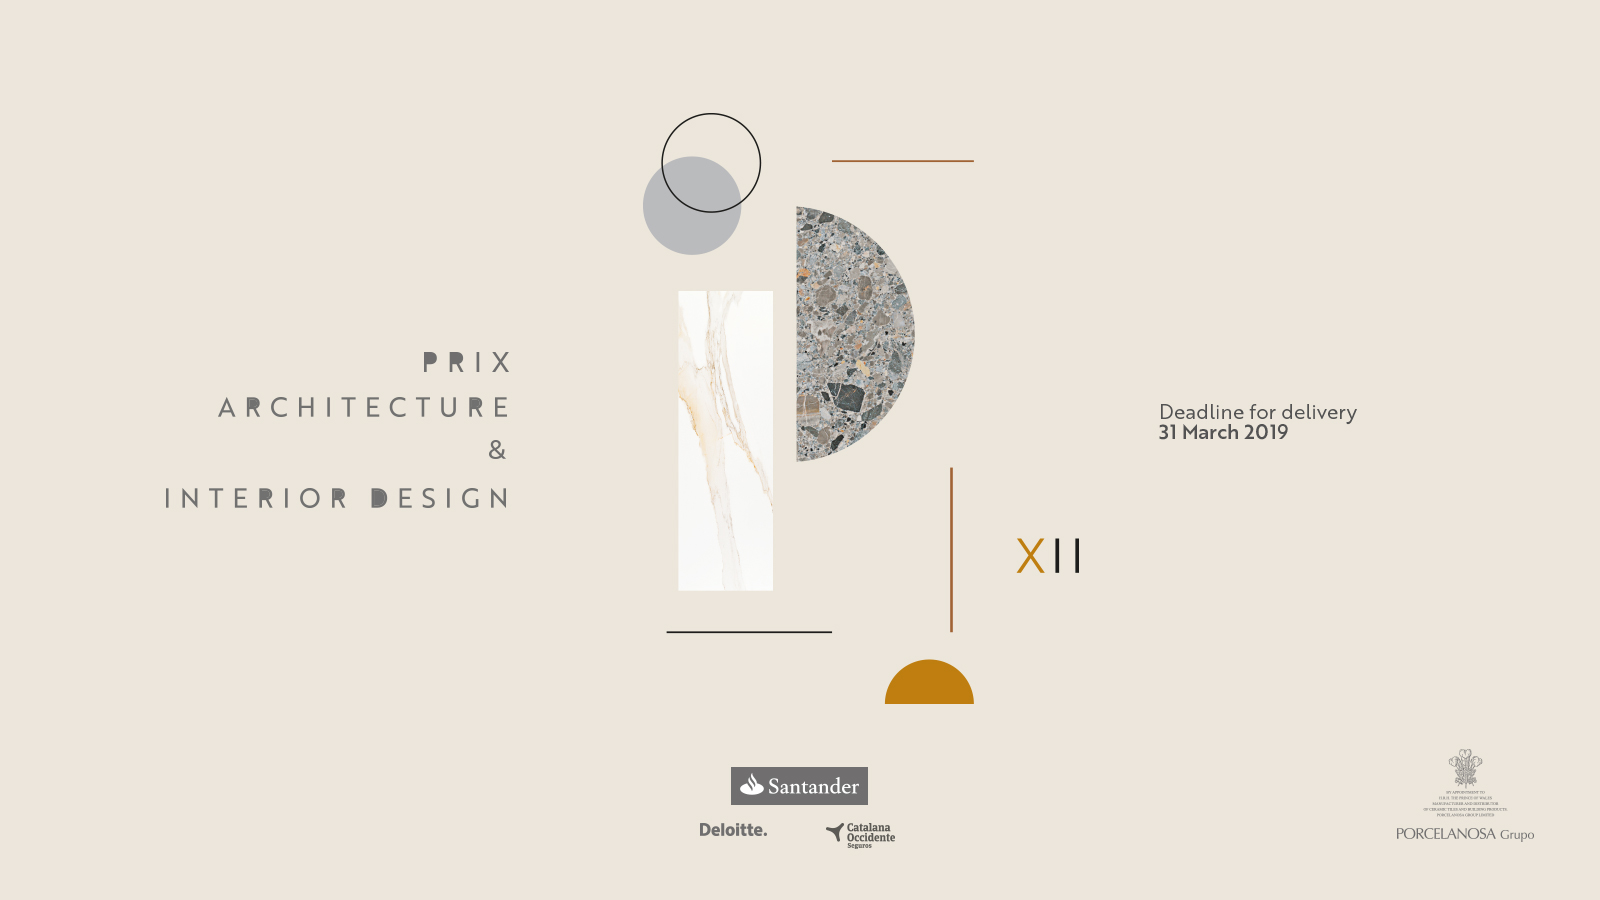 concursos de diseño 2019, design challenge 2019 Porcelanosa. Premios interiorismo y arquitectura